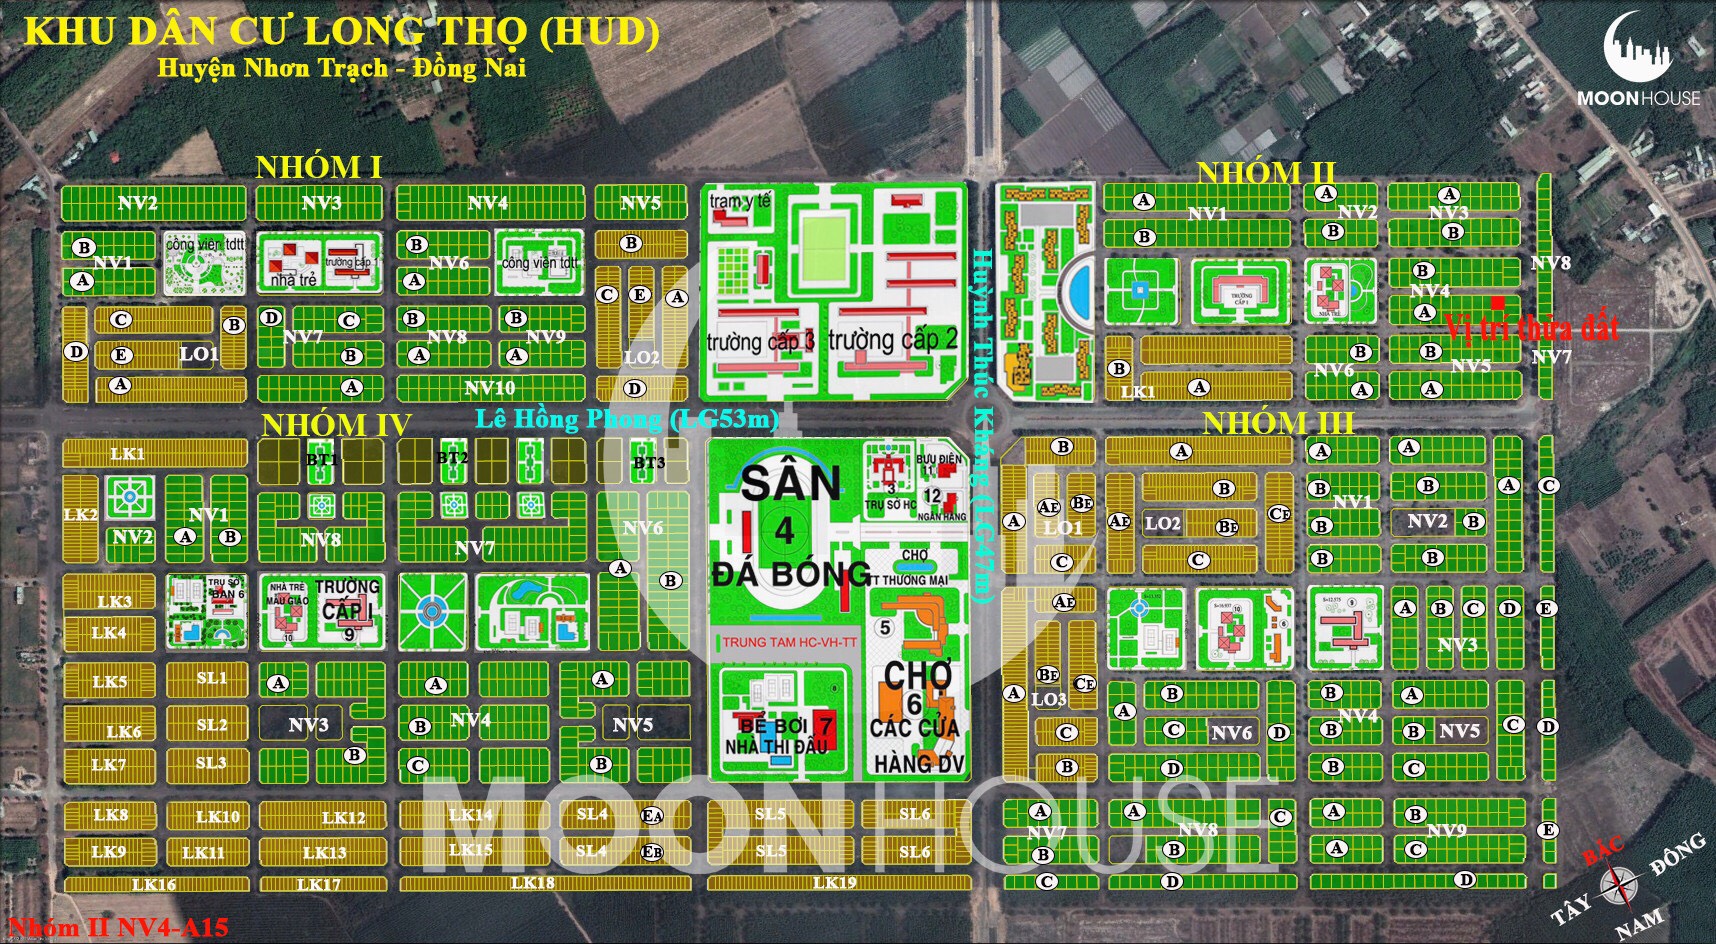 Cần bán lô đất xã Long Thọ diện tích 315m2 HUD huyện Nhơn Trạch 2